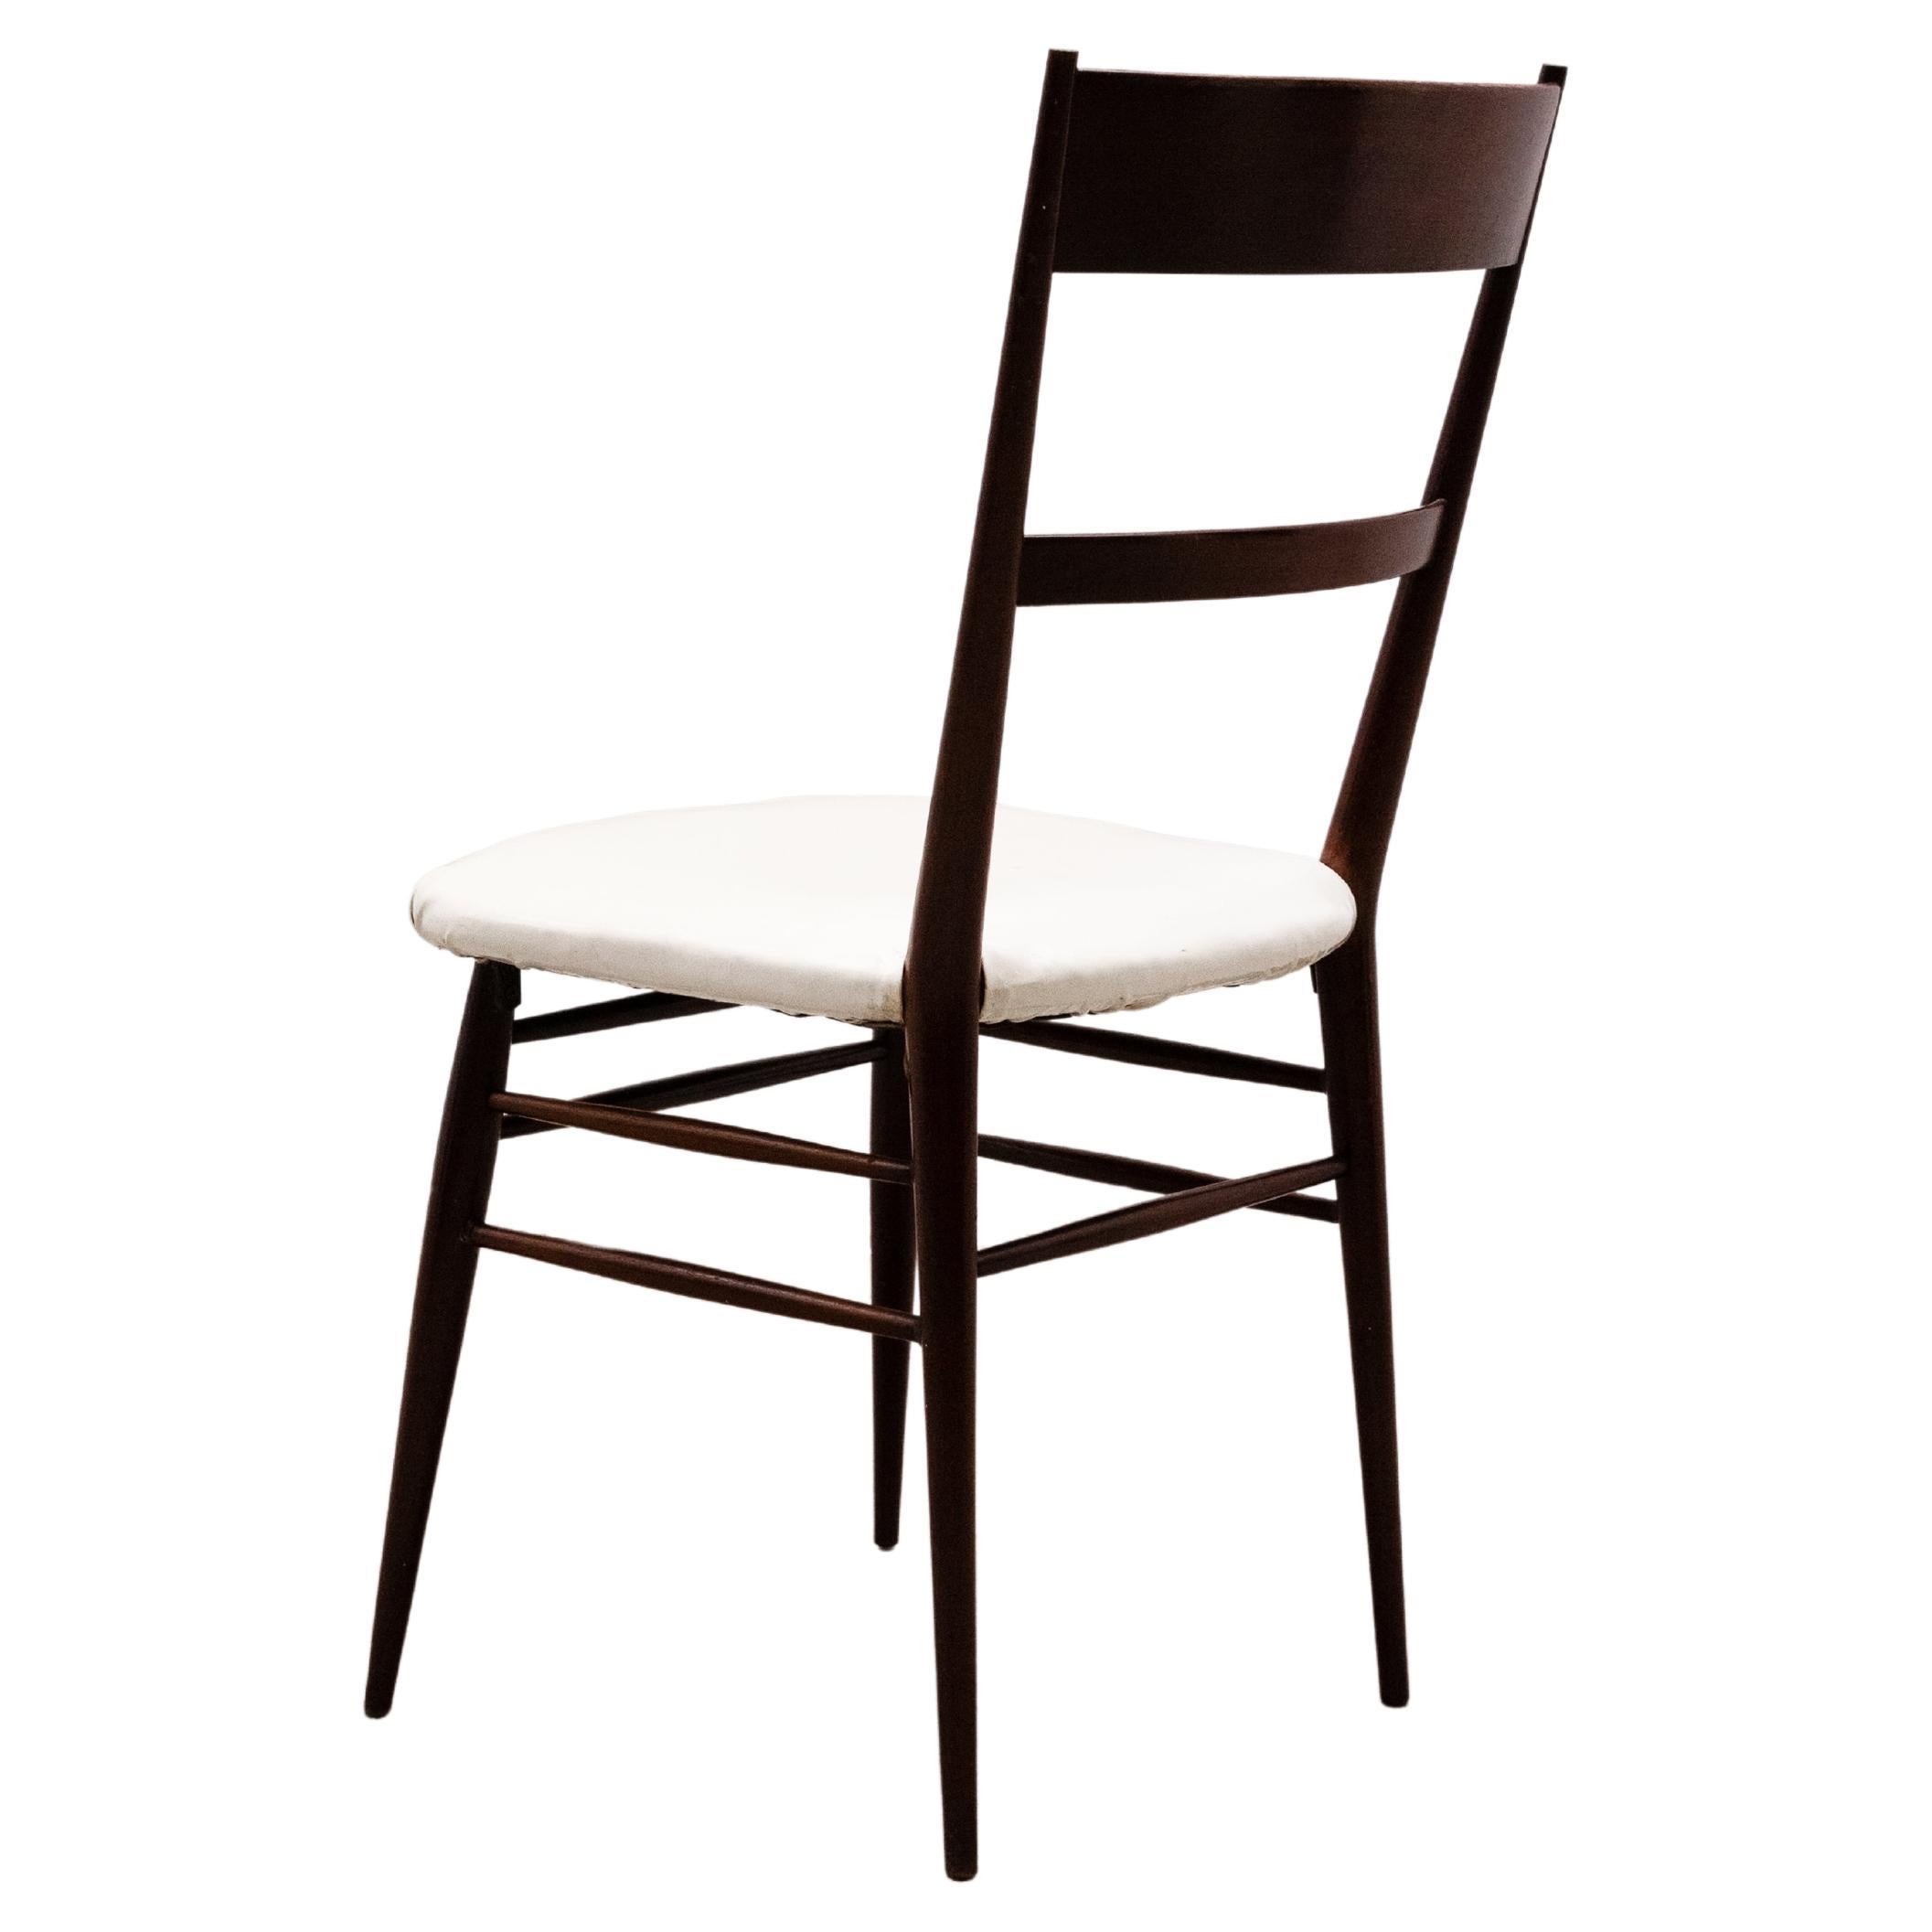 Joaquim Tenreiro, célèbre designer de meubles brésilien, a créé la première chaise en 1942. Cette chaise est considérée comme l'un des premiers exemples de design moderne au Brésil. Joaquim Tenreiro a été l'un des pionniers de l'introduction de